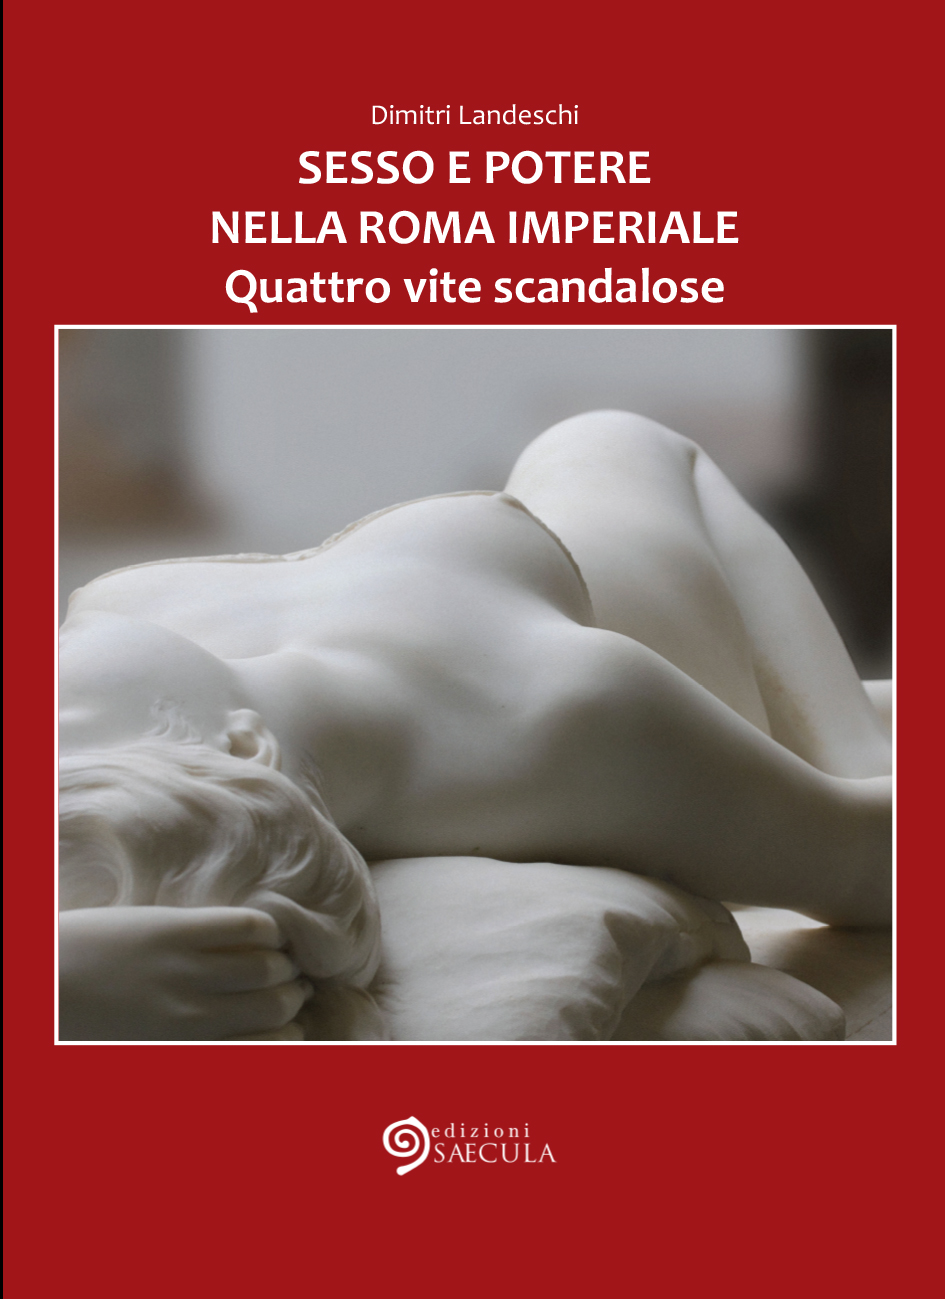 Sesso e potere nella Roma imperiale, di Dimitri Landeschi